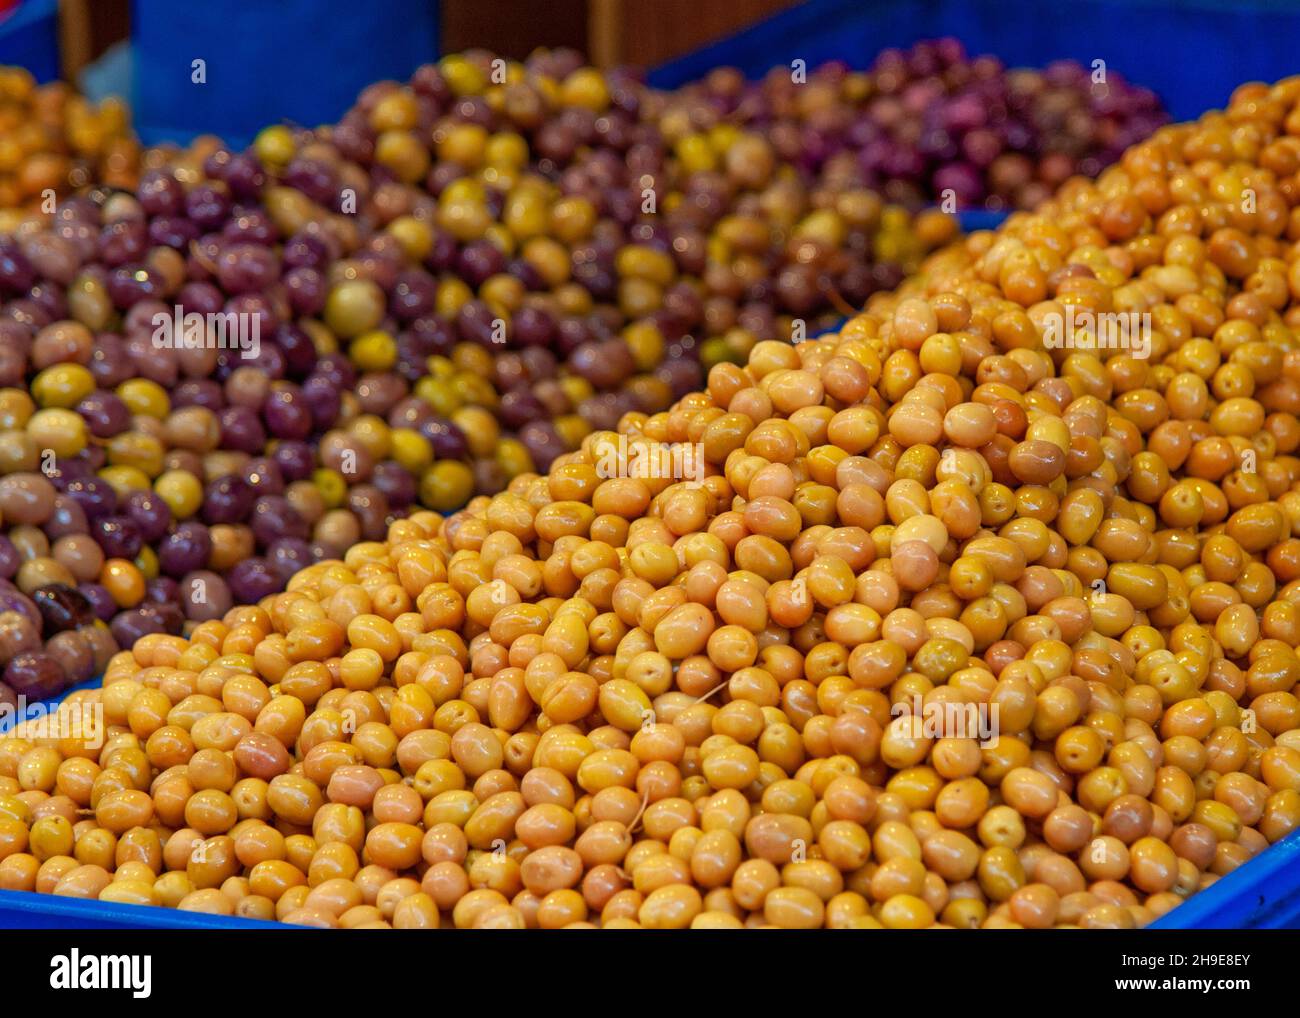 Oliven auf dem Markt auf dem Stand in istanbul bei den Bauern, frische gelbe Oliven Stockfoto